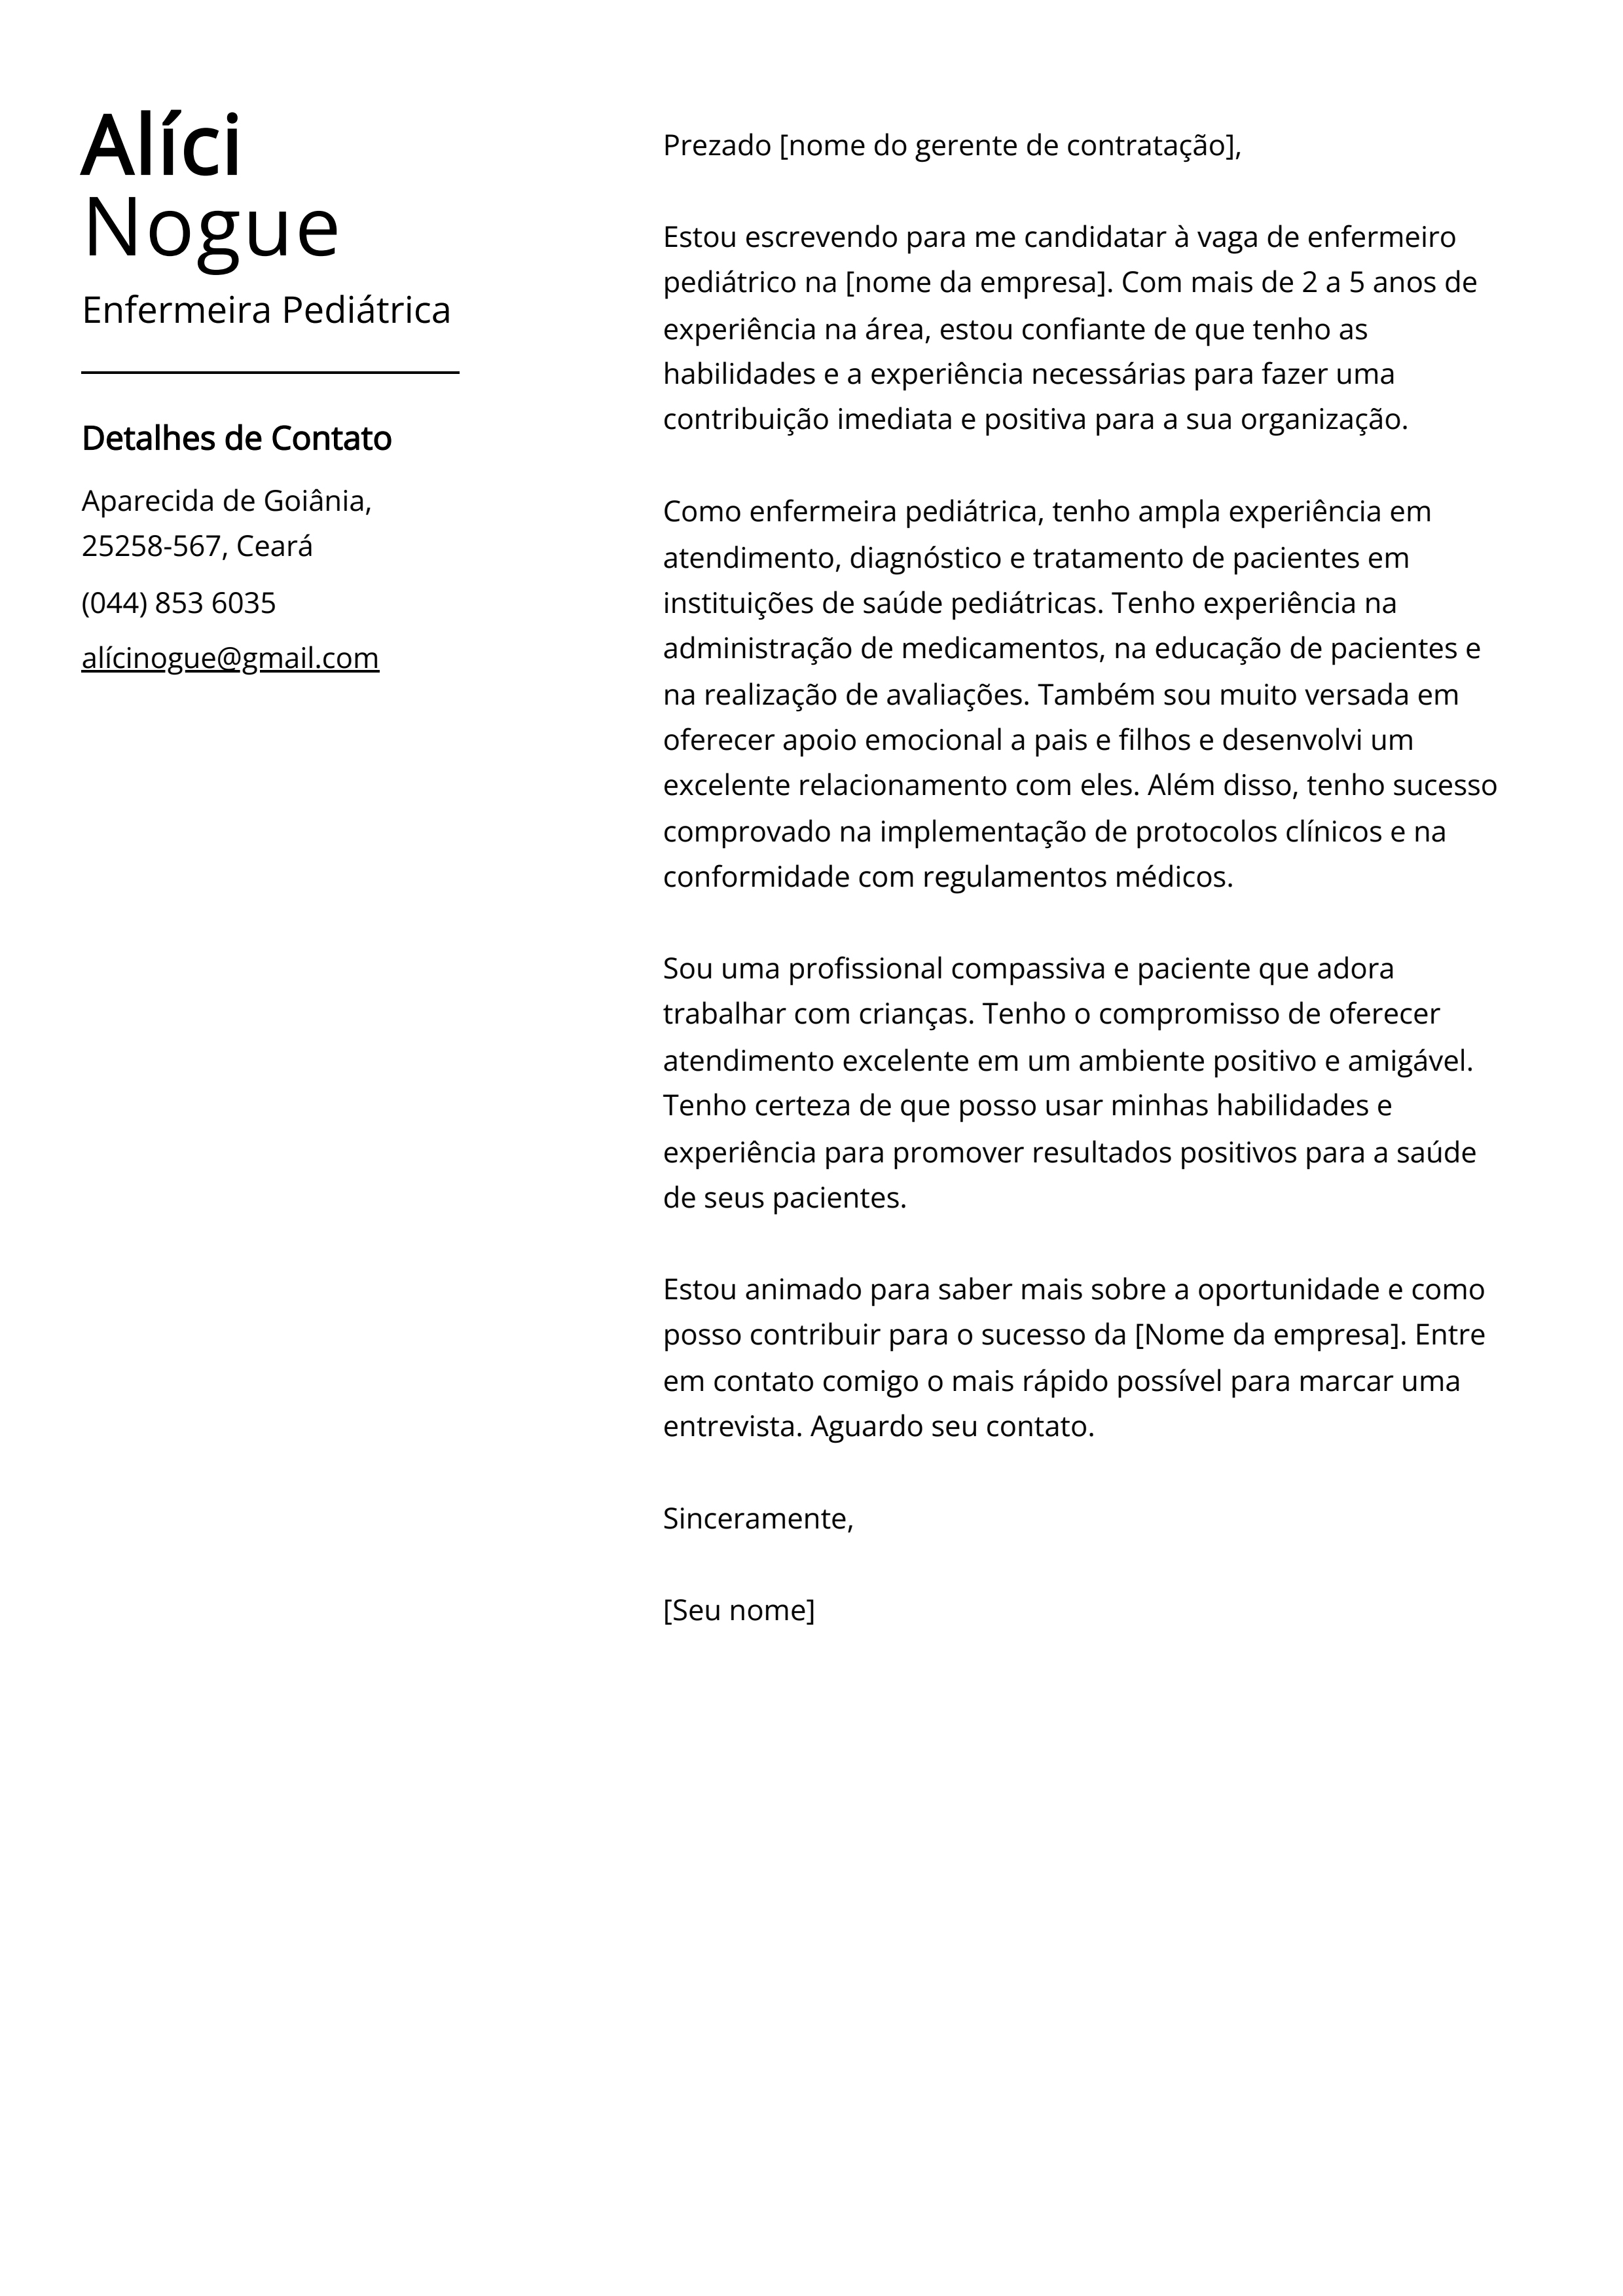 Exemplo de carta de apresentação da Enfermeira Pediátrica